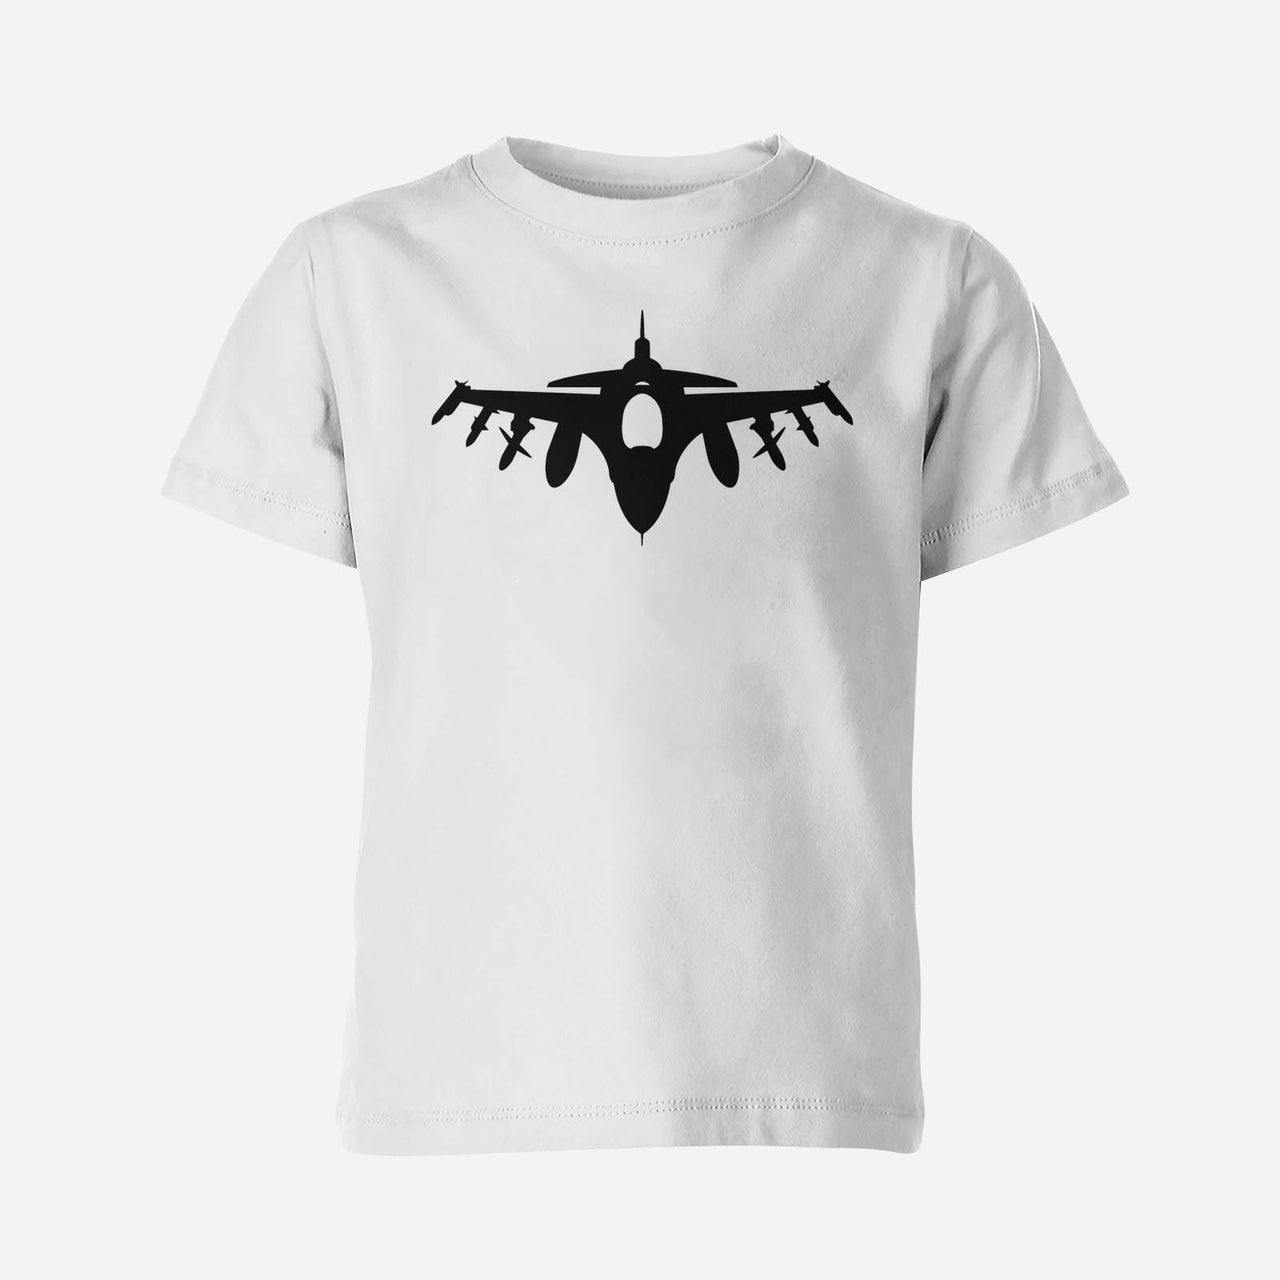 Fighting Falcon F16 Silhouette Designed Children T-Shirts